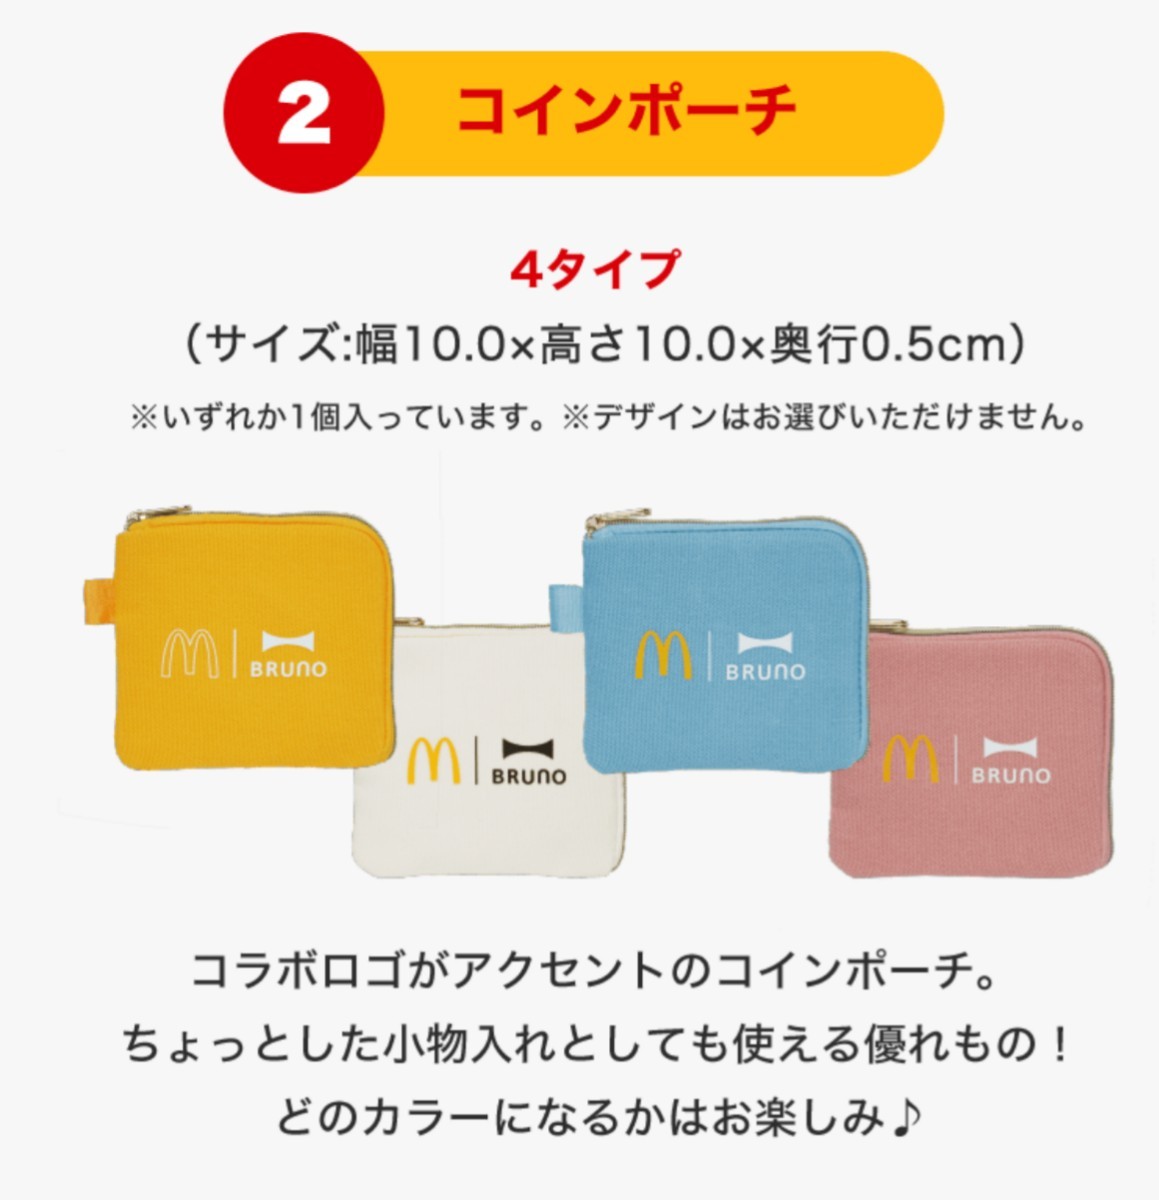 c[ McDonald's ] лотерейный мешок товары только картофель увлажнитель, монета сумка, покрывало, Mini plate 4 позиций комплект бледно-голубой 